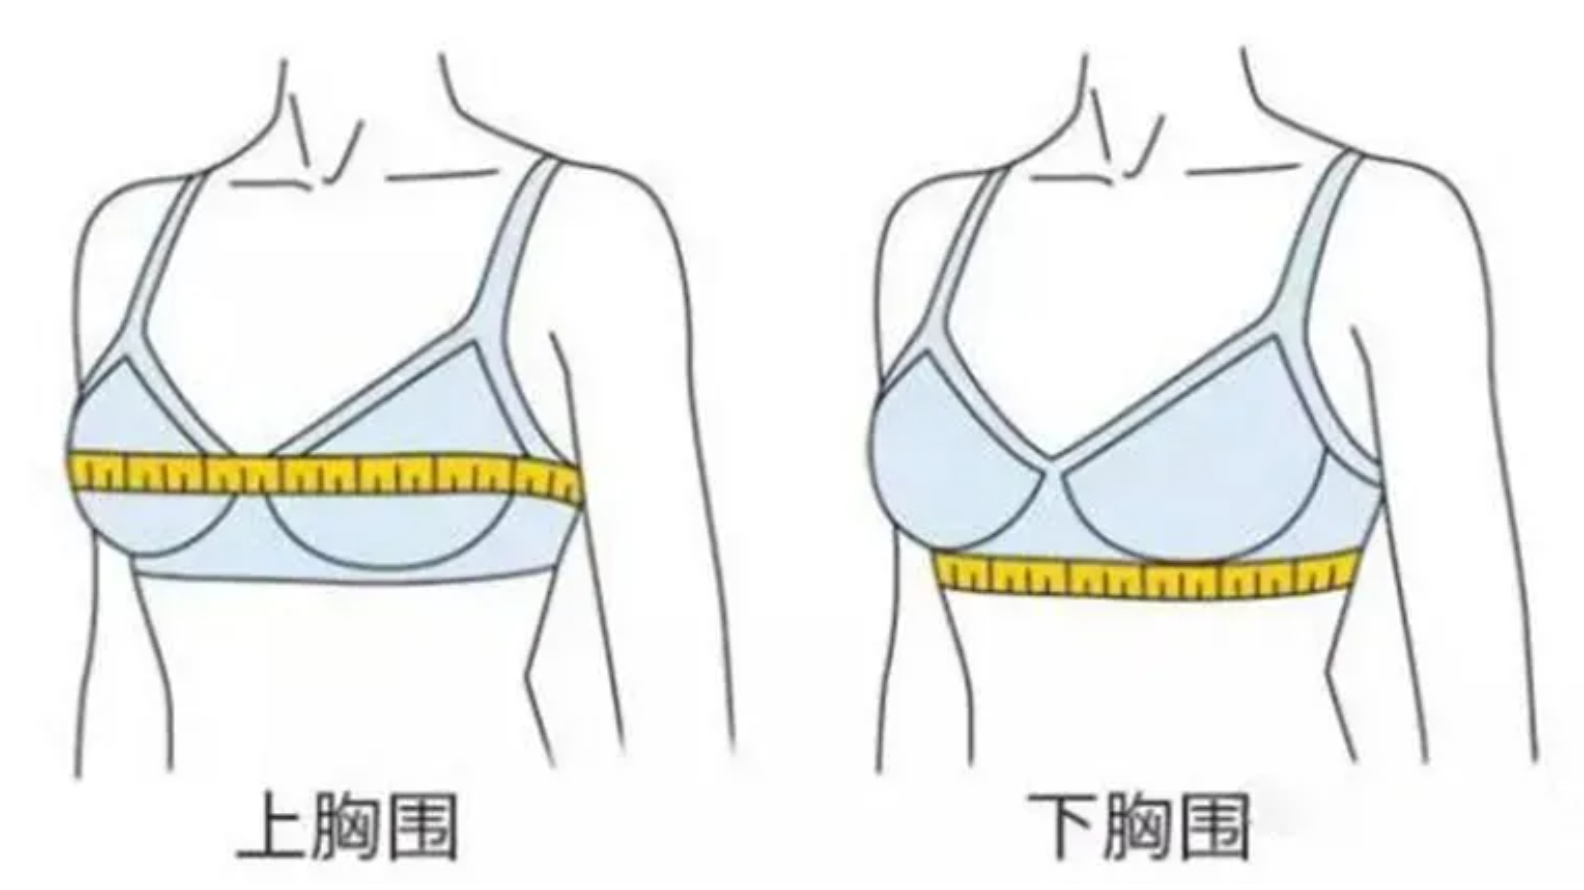 胸围量法示意图图片